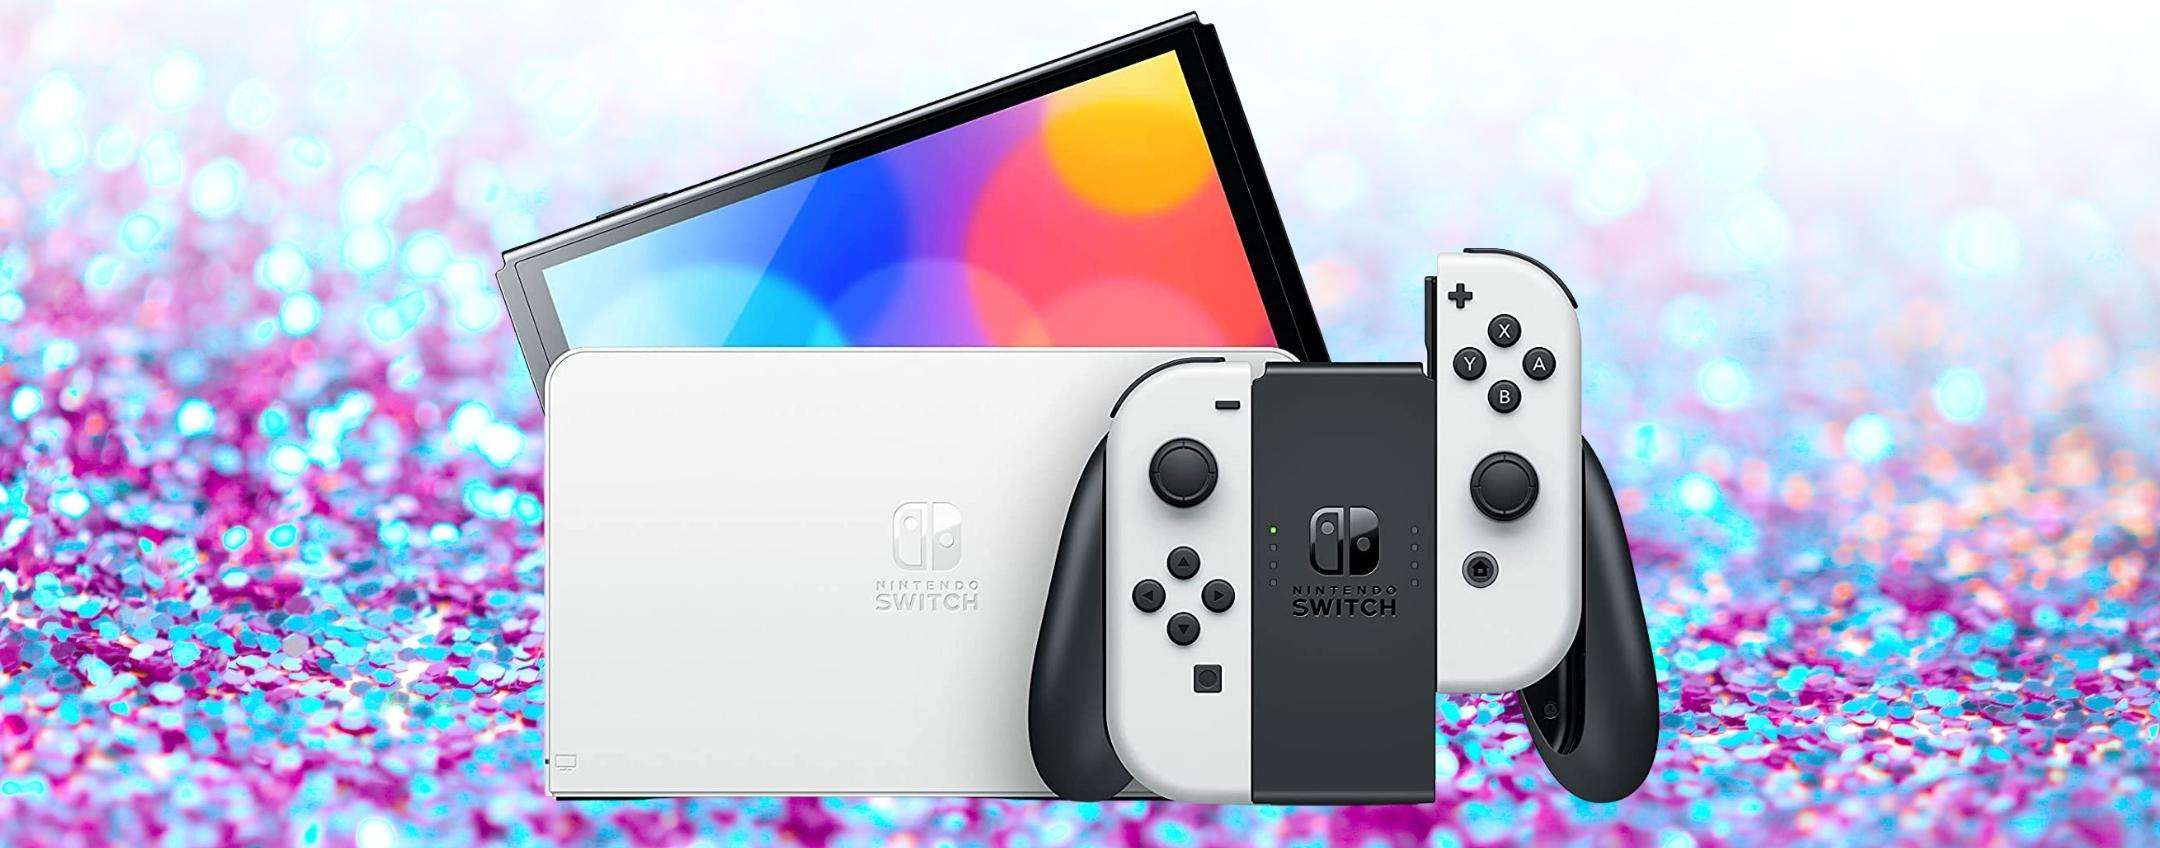 Nintendo Switch OLED: in promozione a Tasso Zero, è ora di PRENDERLA